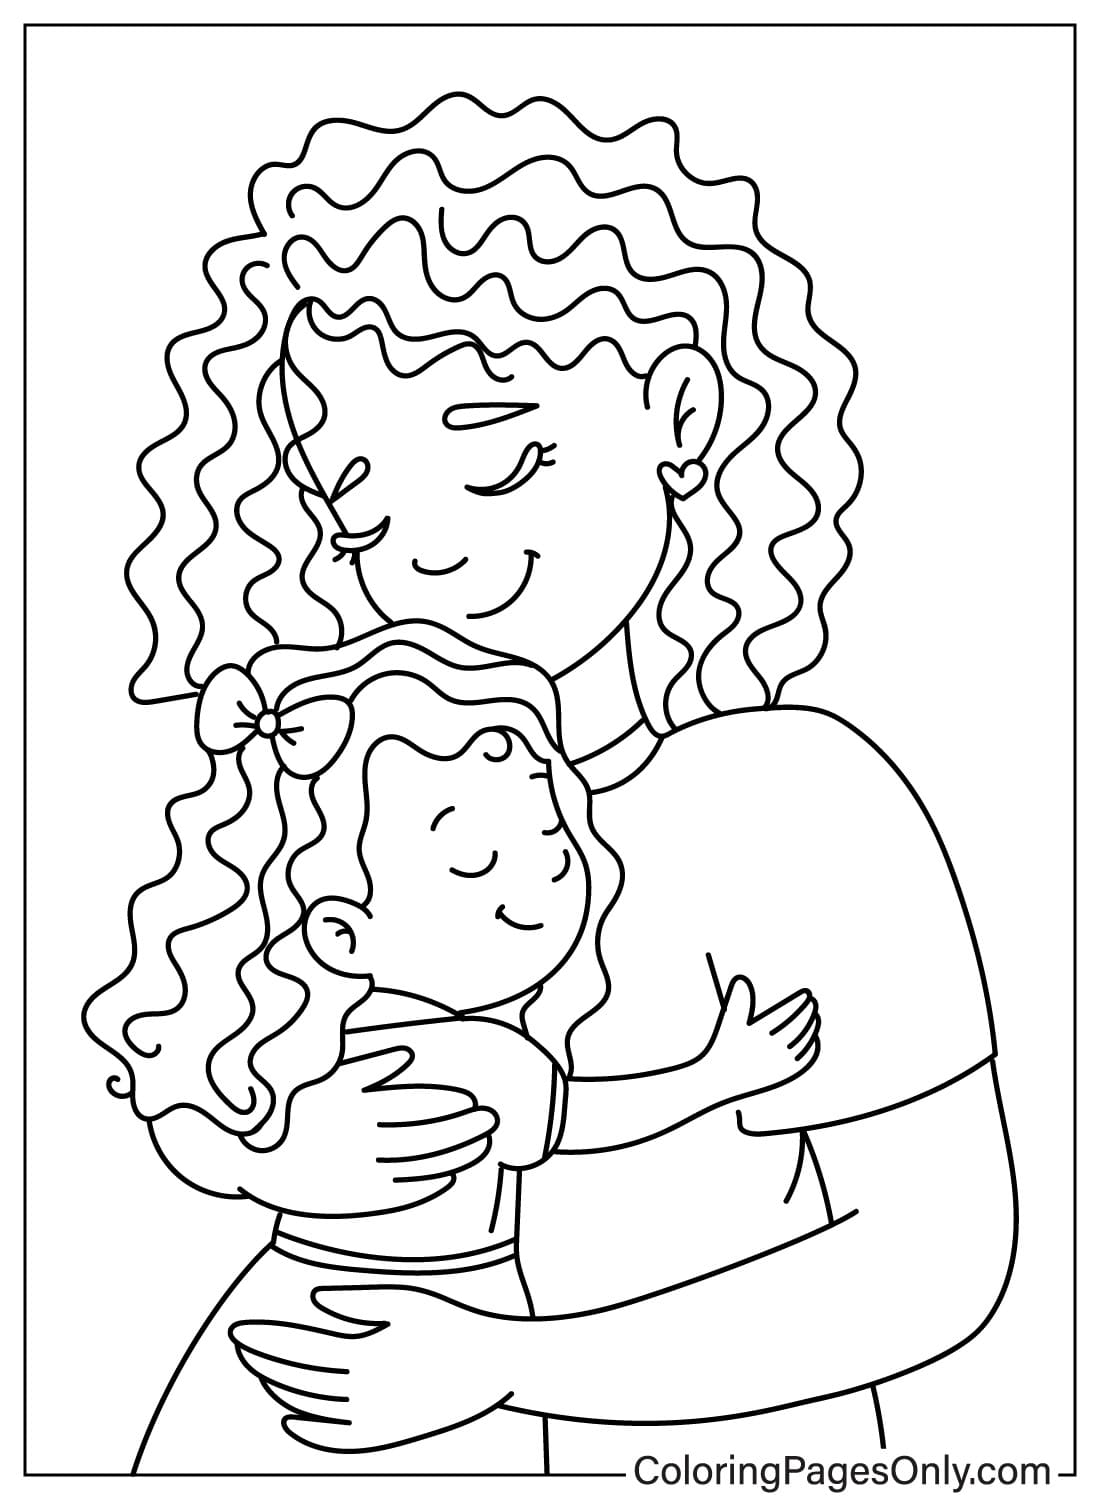 Madre abrazando a su hija desde el día de la madre